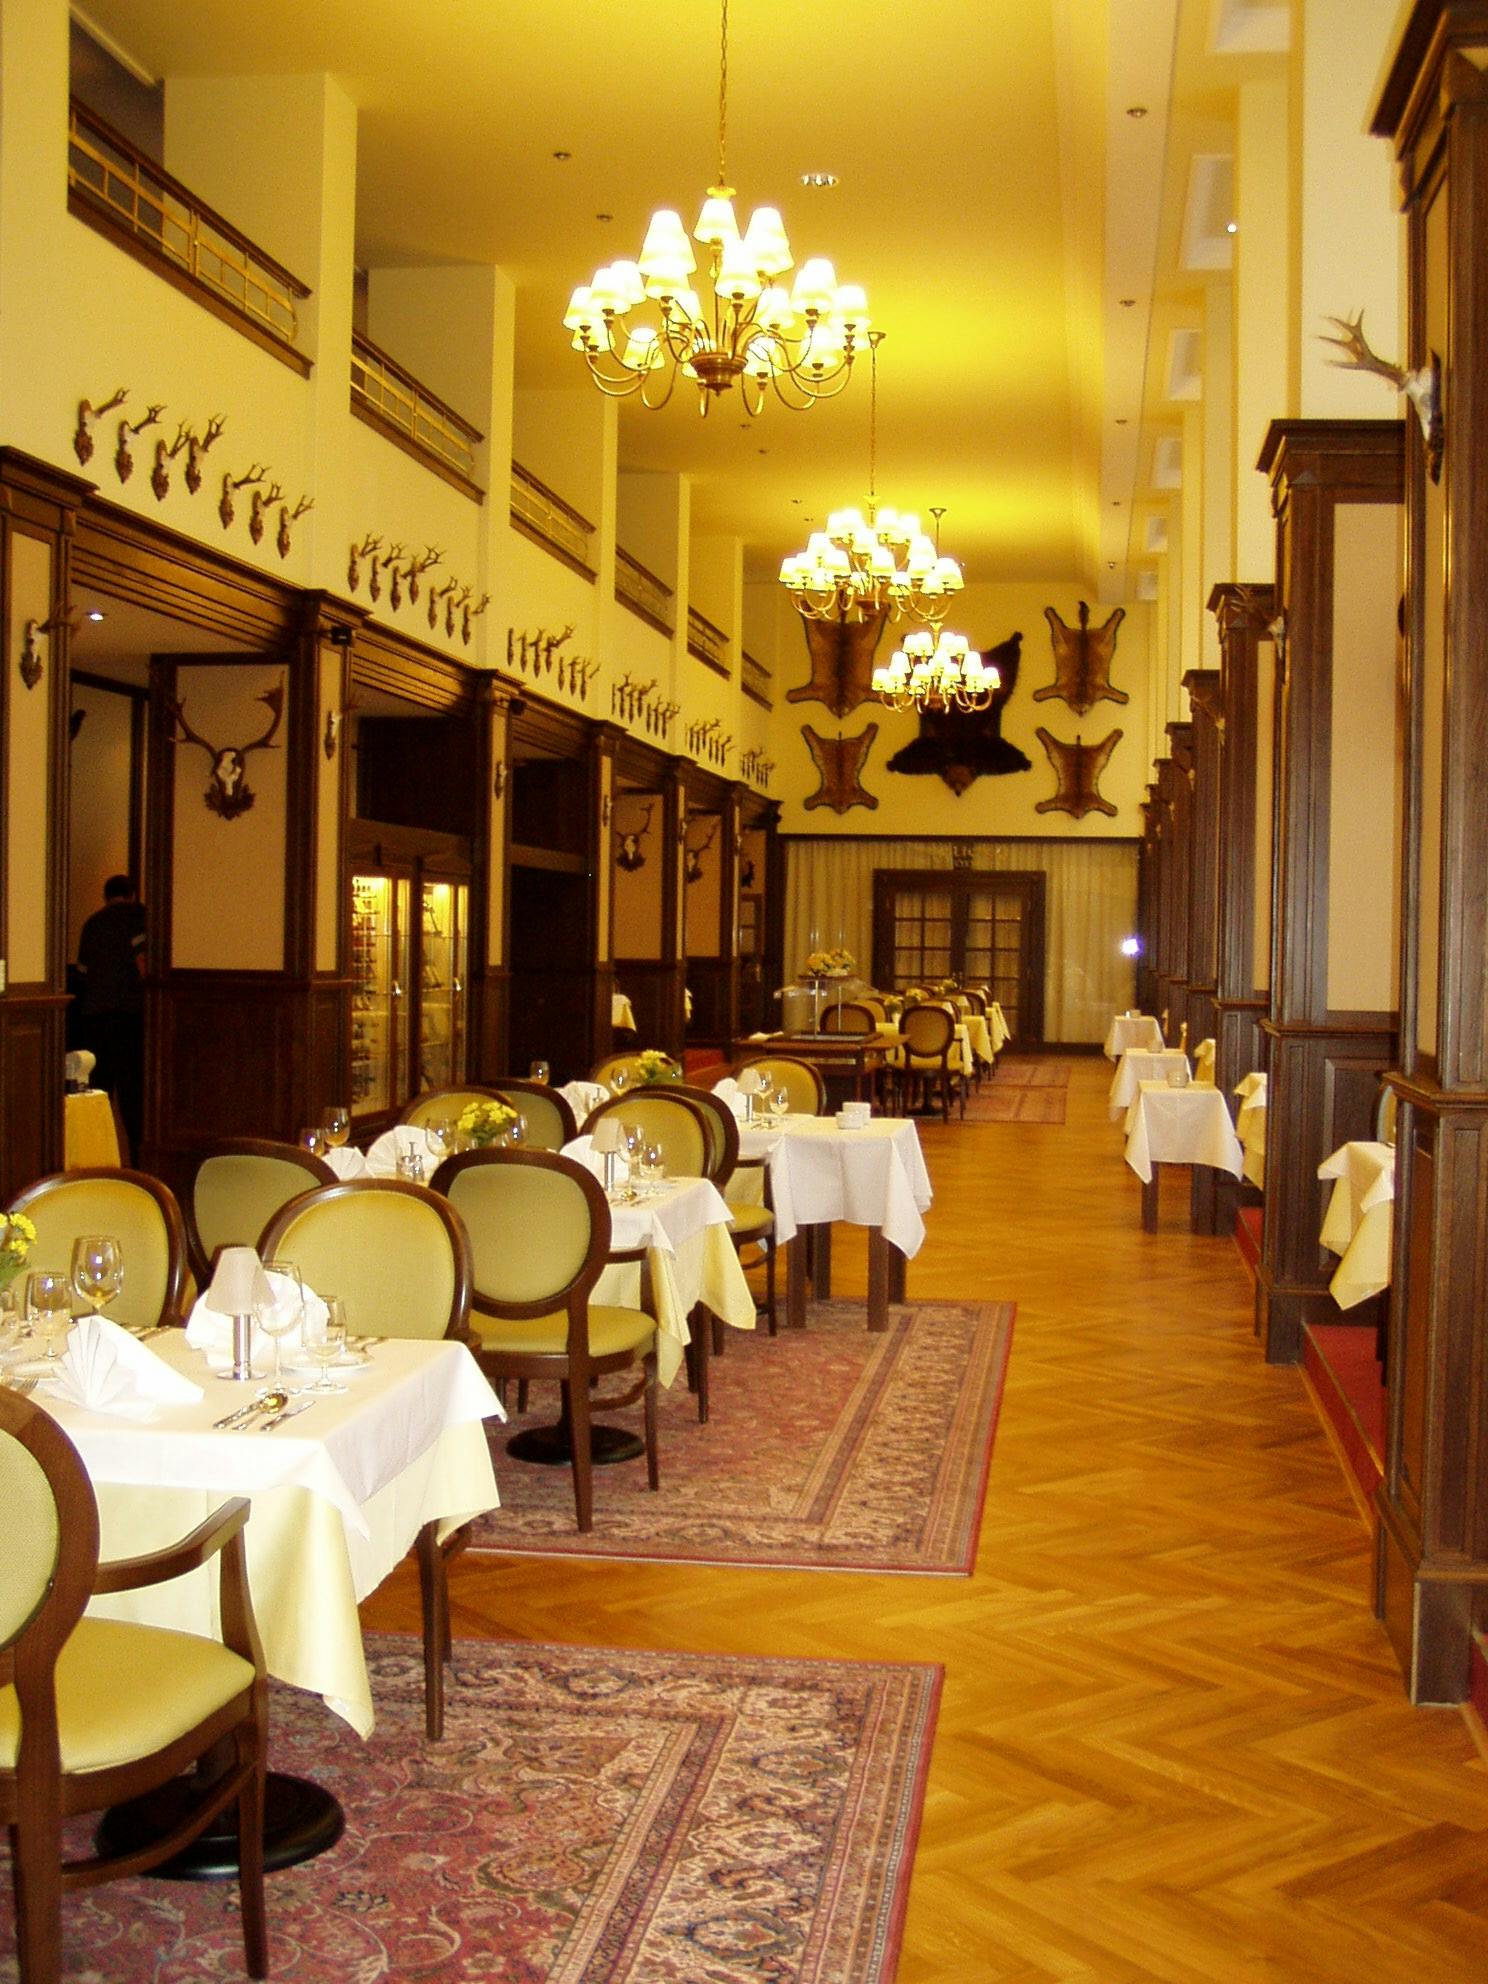 Restaurace Sv. Hubert Bratislava1.jpg